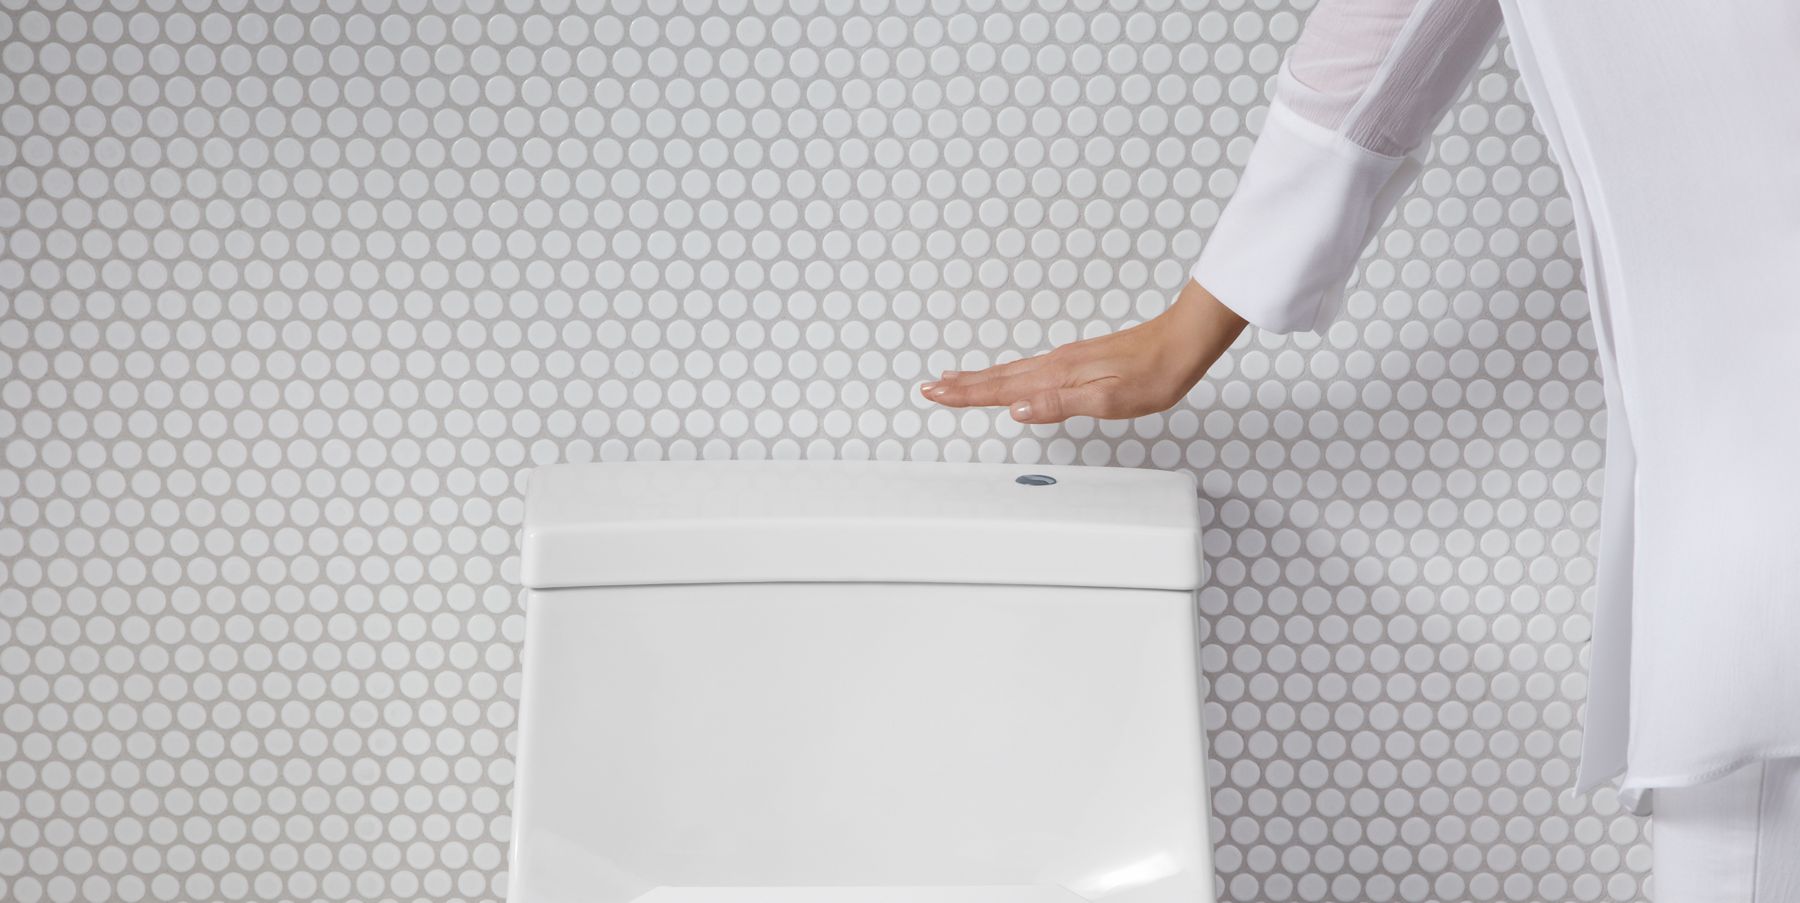 Meet KOHLER's Touchless Toilet, KOHLER PH Kitchen and Bathroom Blog Posts